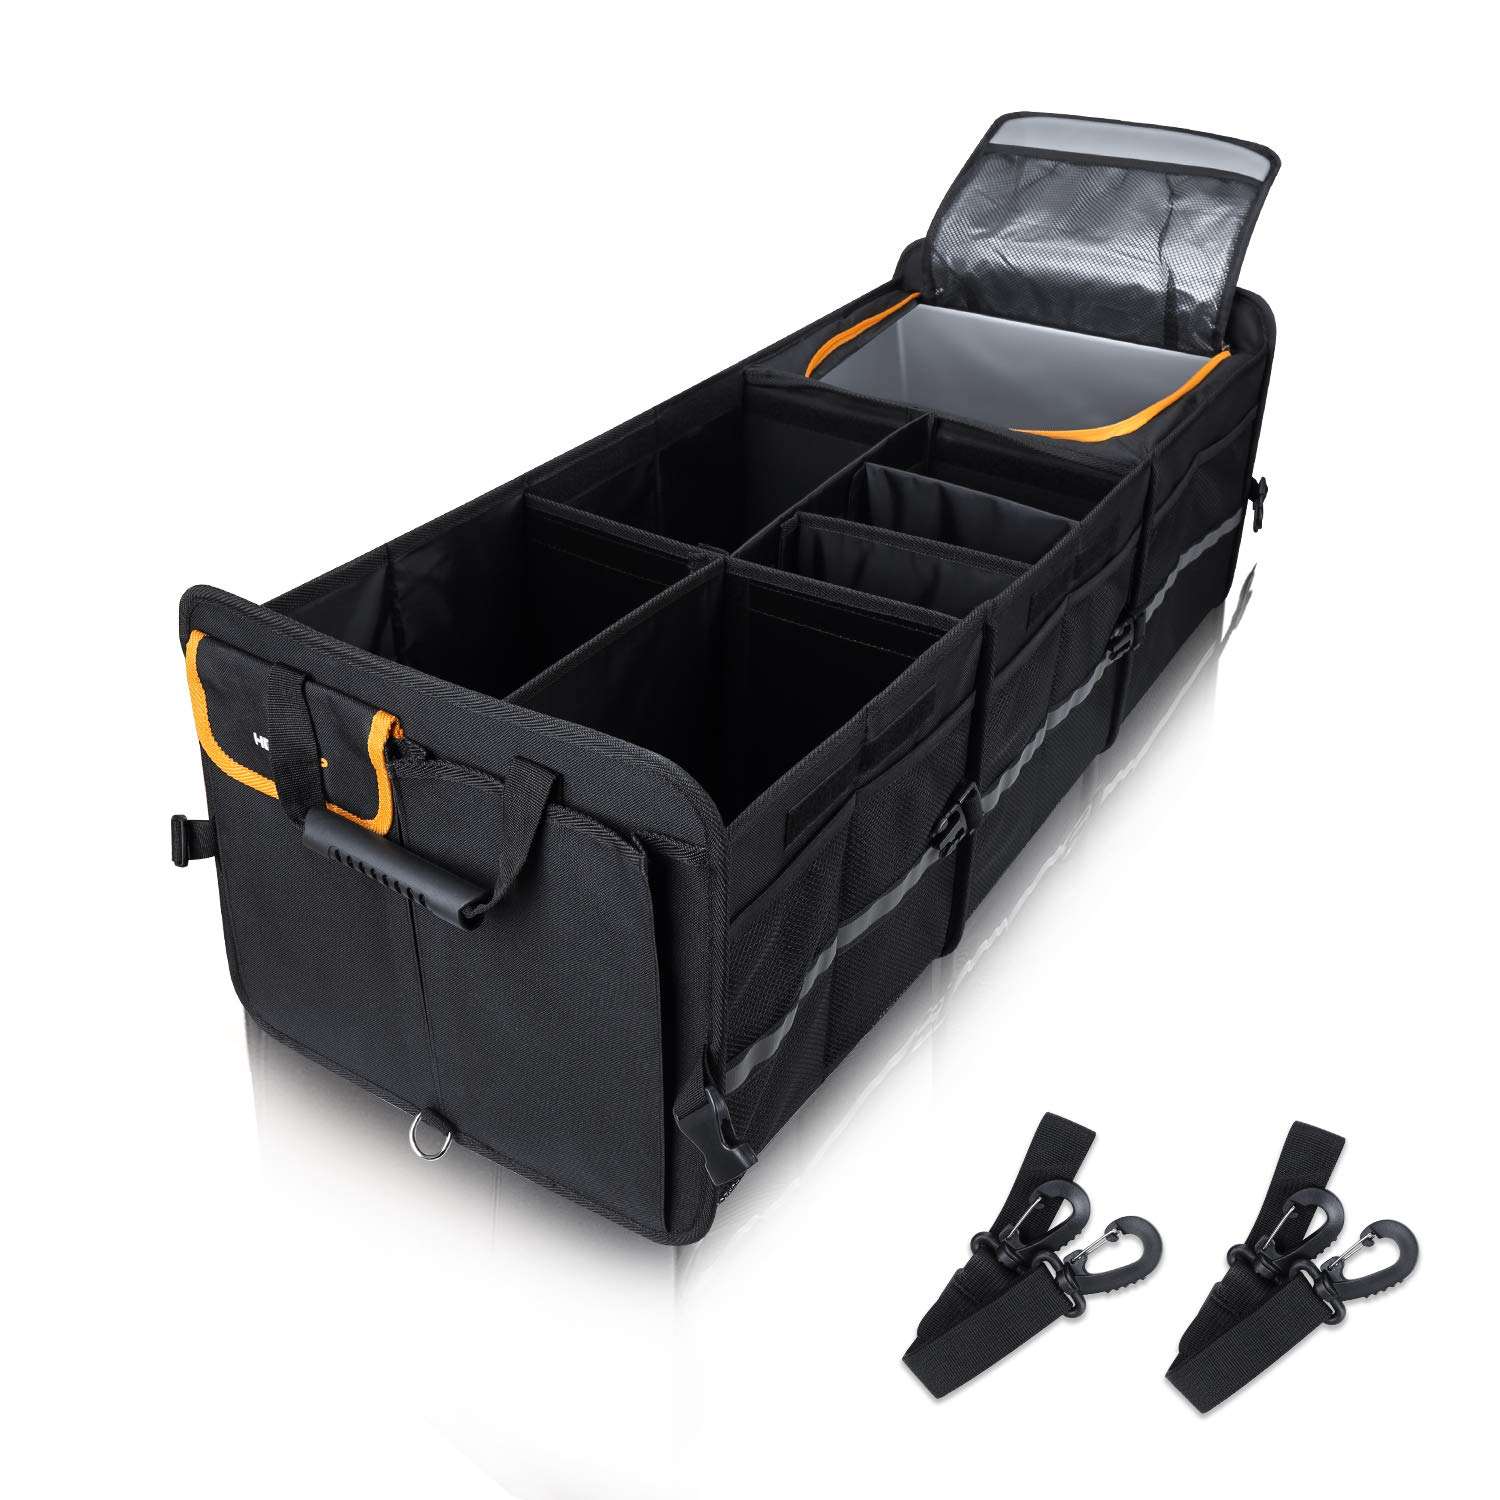 カスタム大型トランク オーガナイザー、タイダウン ストラップ付き、取り外し可能な仕切り、2 mm PE ボードで構築